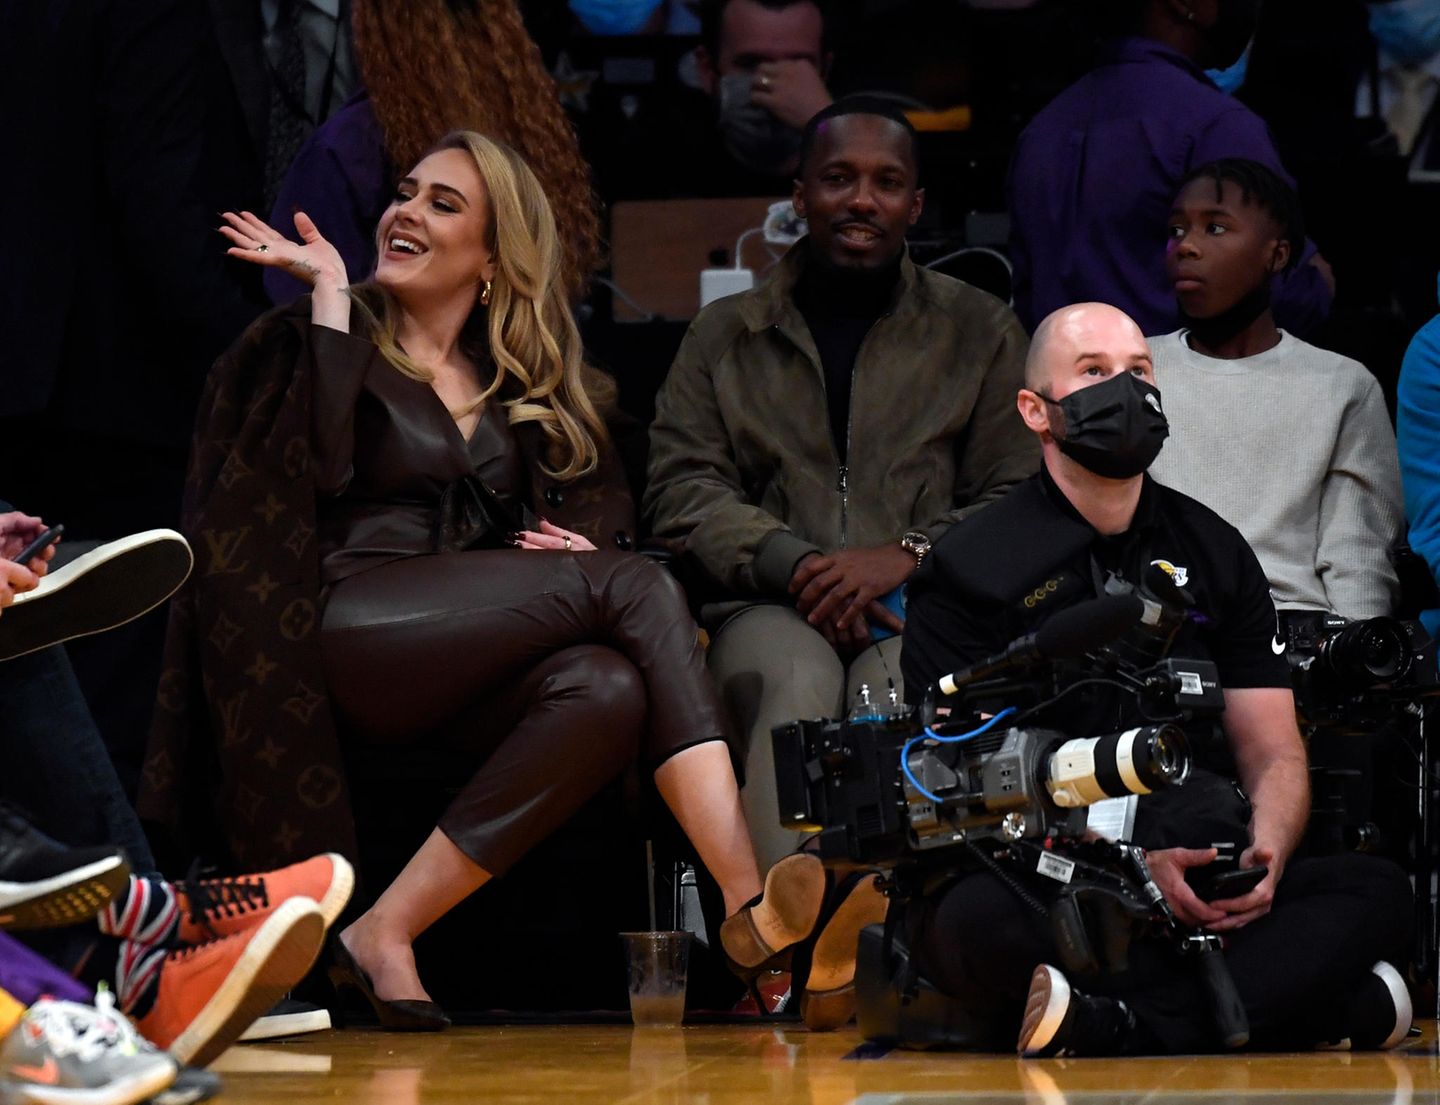 Gesichtet: Adele und Rich Paul beim Lakers Game in Los Angeles